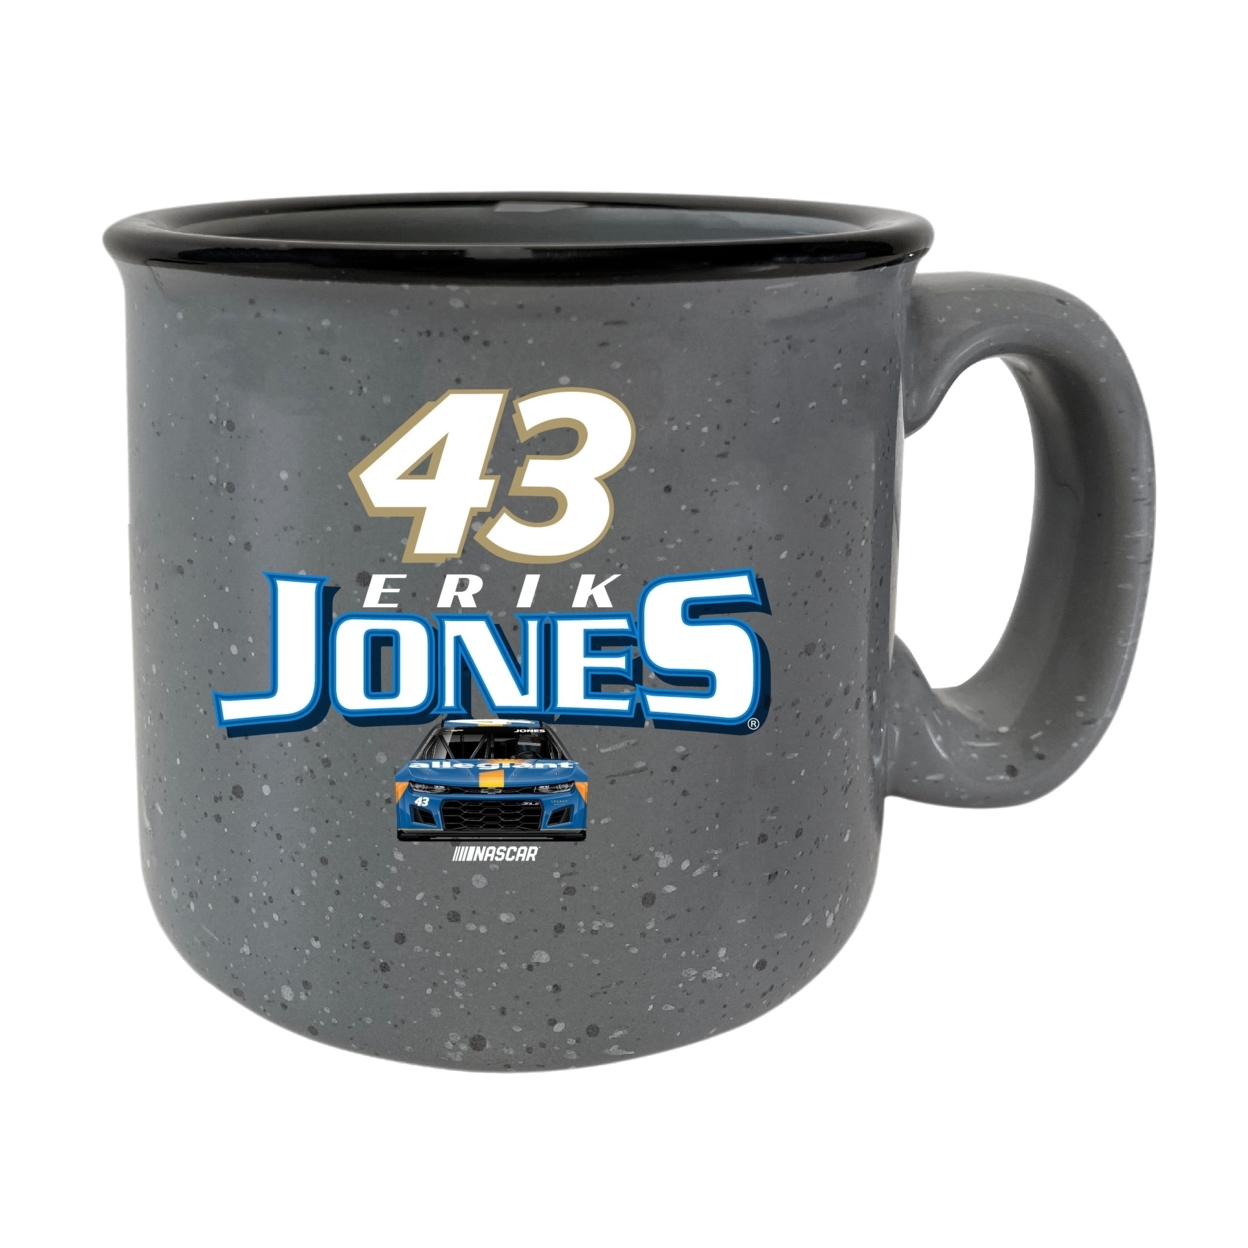 #43 Erik Jones Officially Licensed Ceramic Camper Mug 16oz - Grey